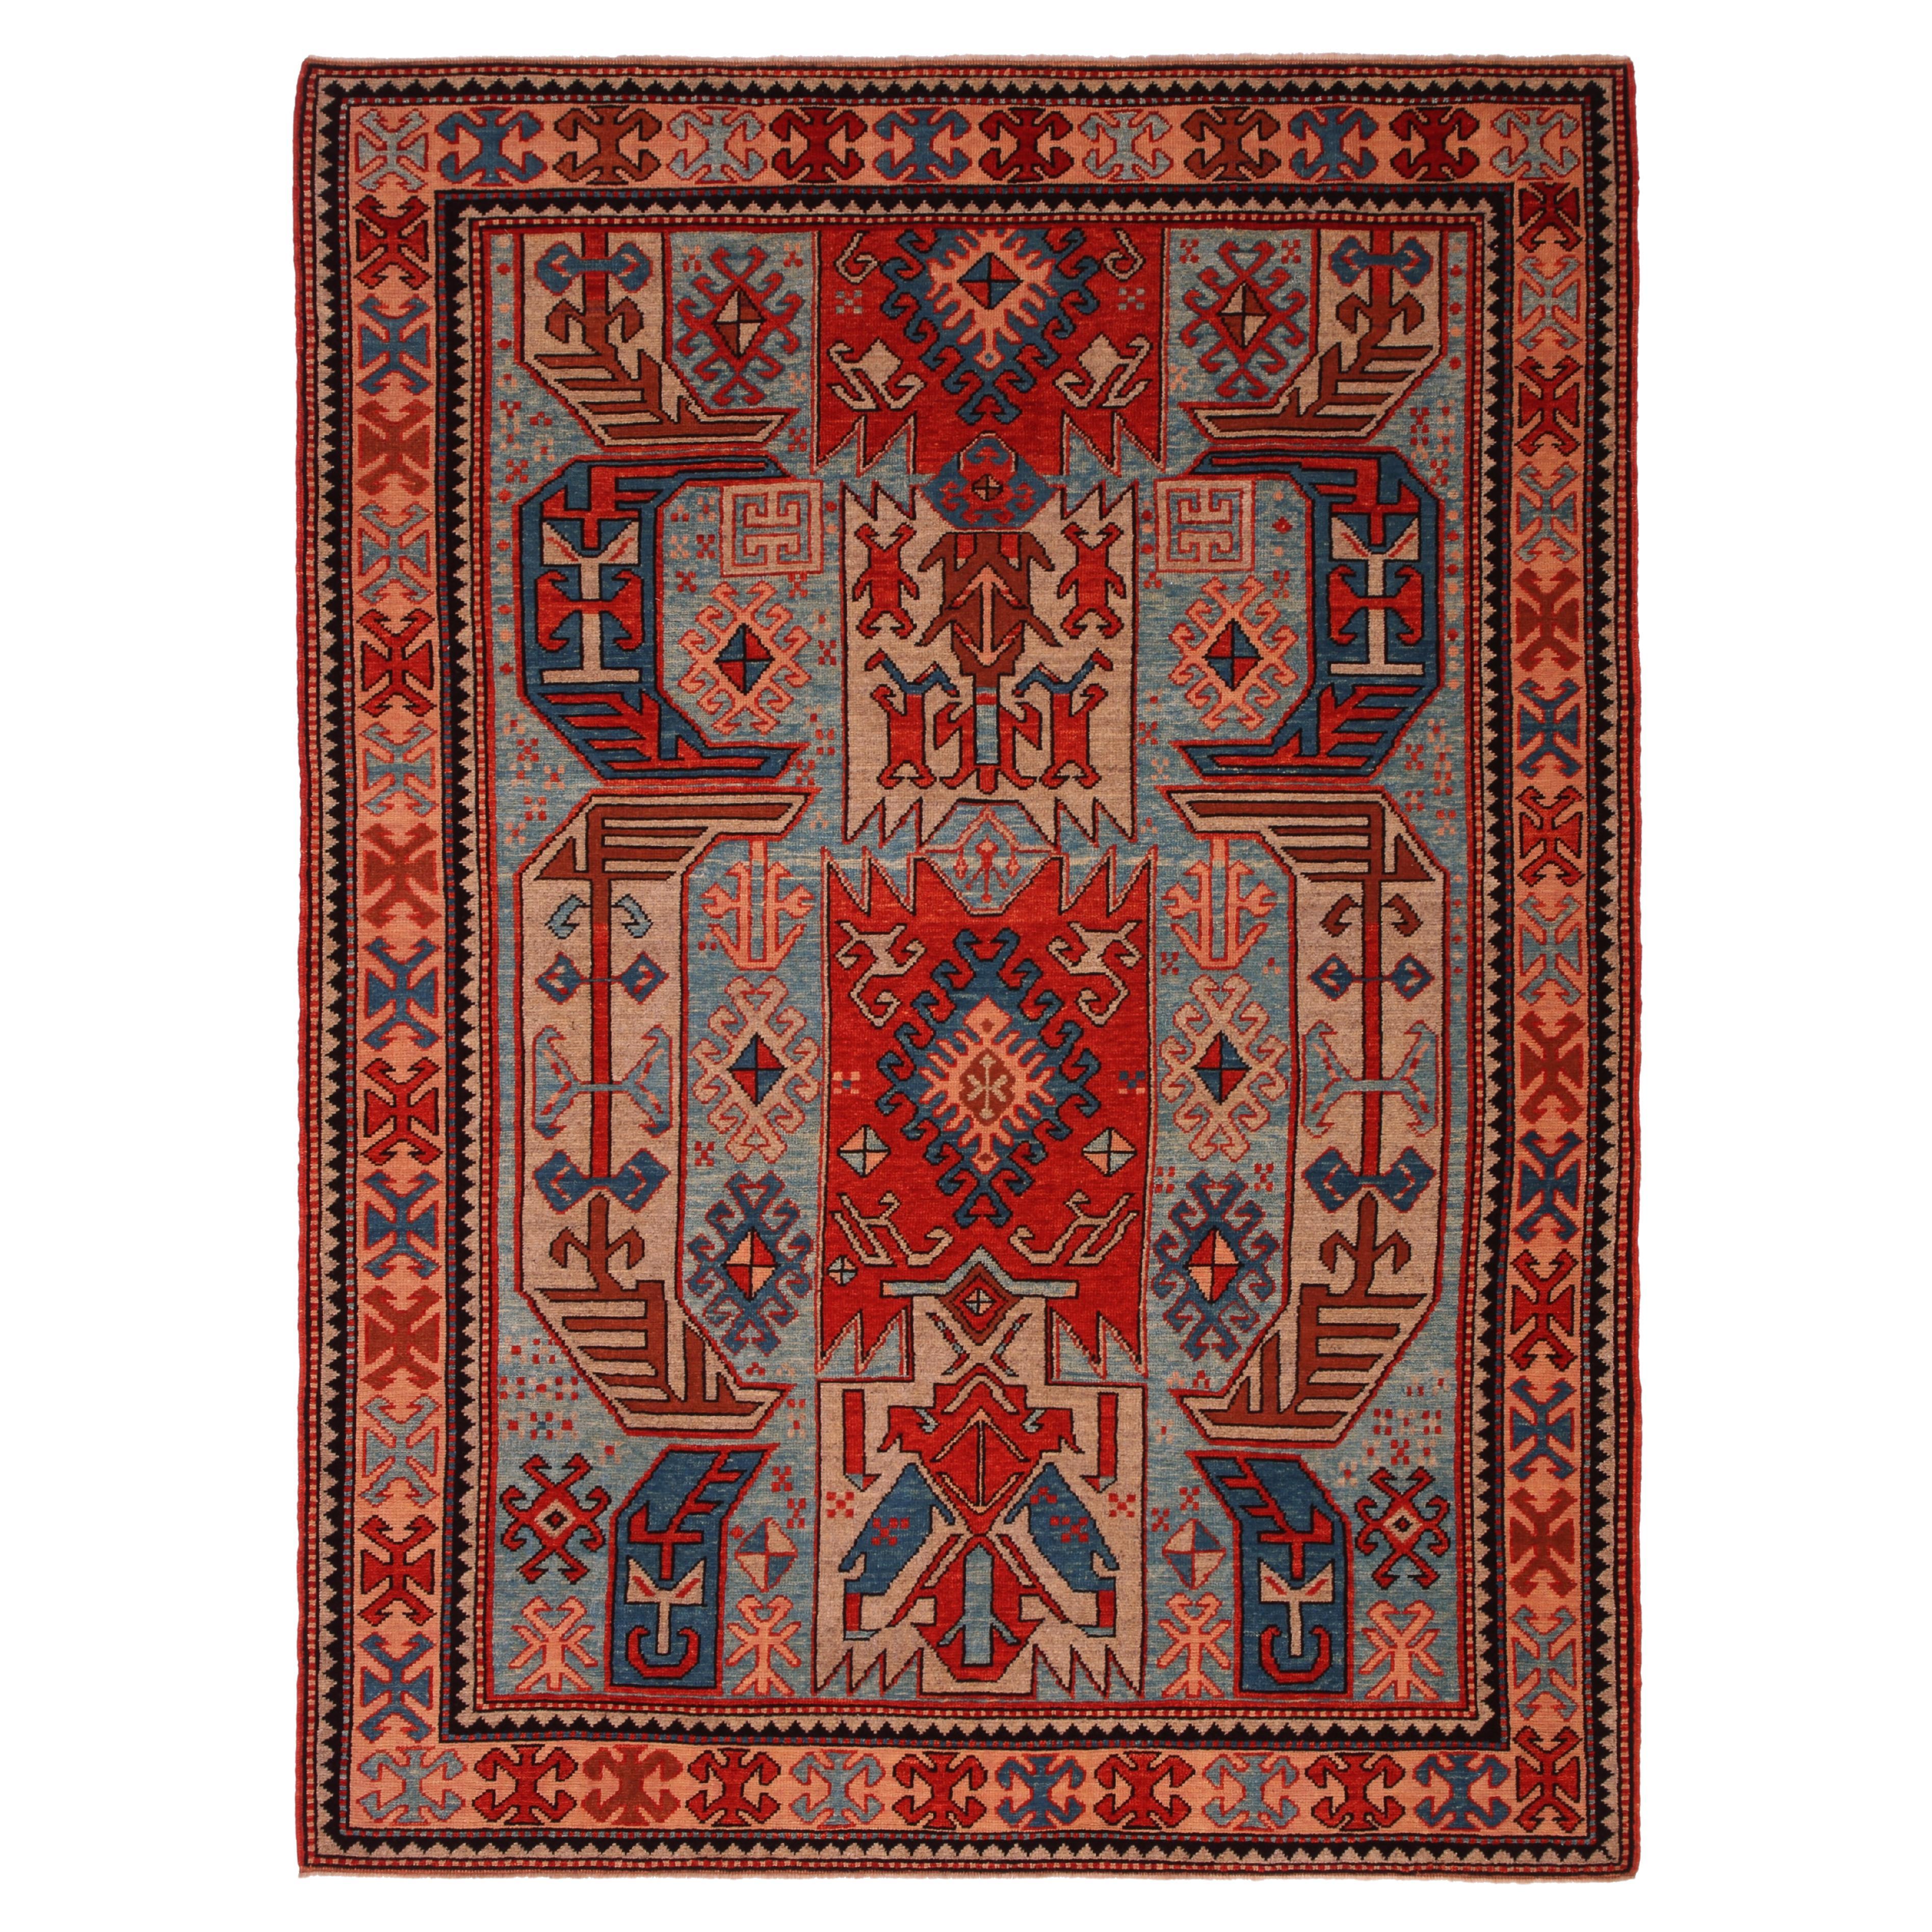 Ararat Rugs Lenkoran Rug Caucasian Revival 19th Century Carpet, Natural Dyed